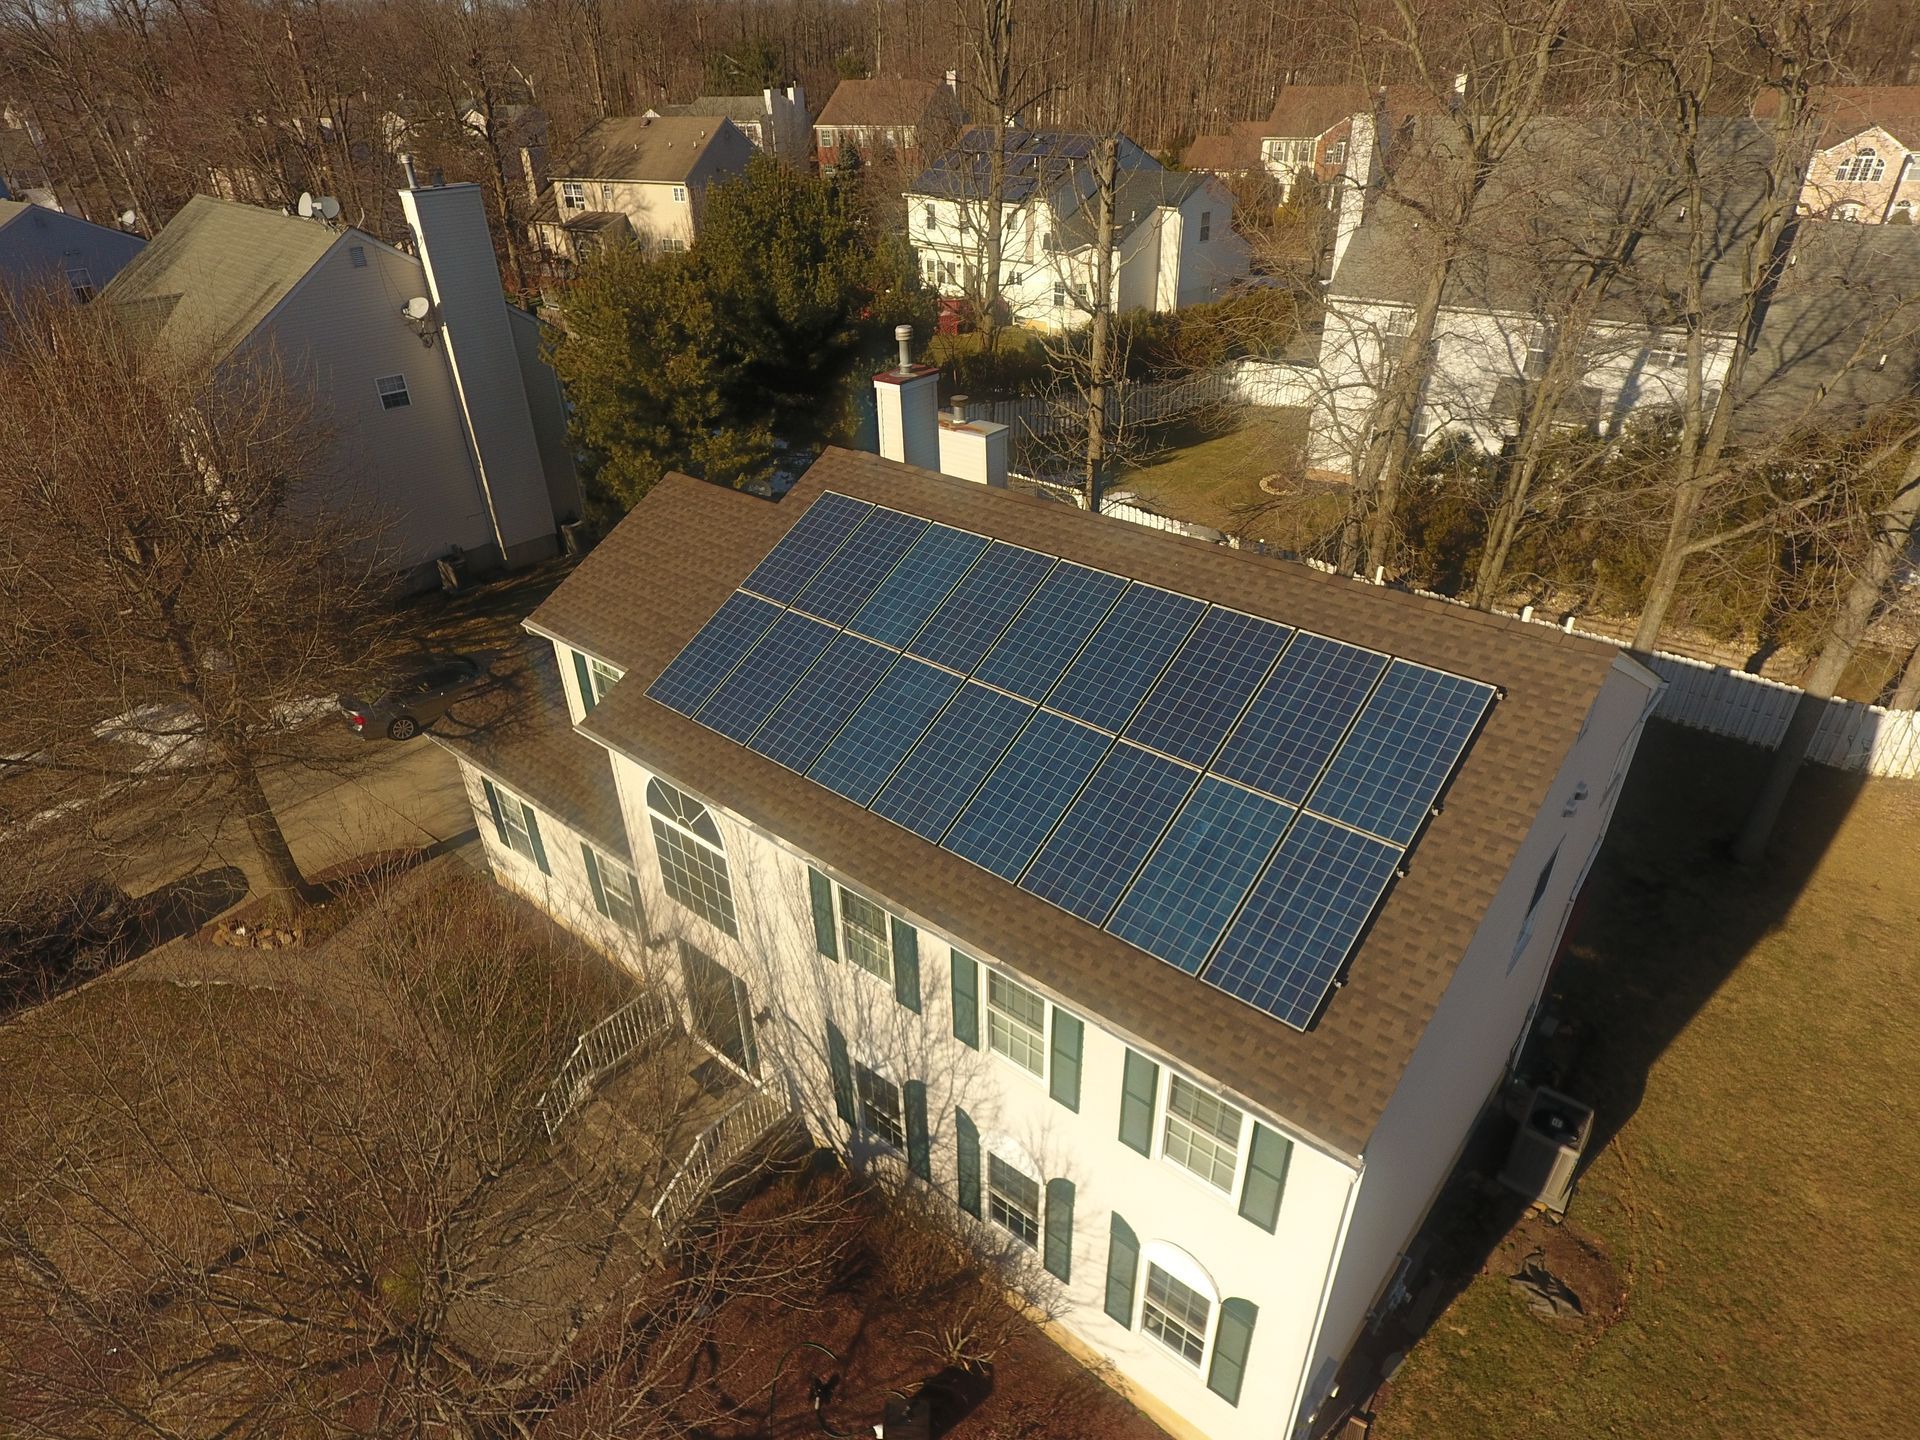 Solar panel replacement in Hillsborough, NJ.